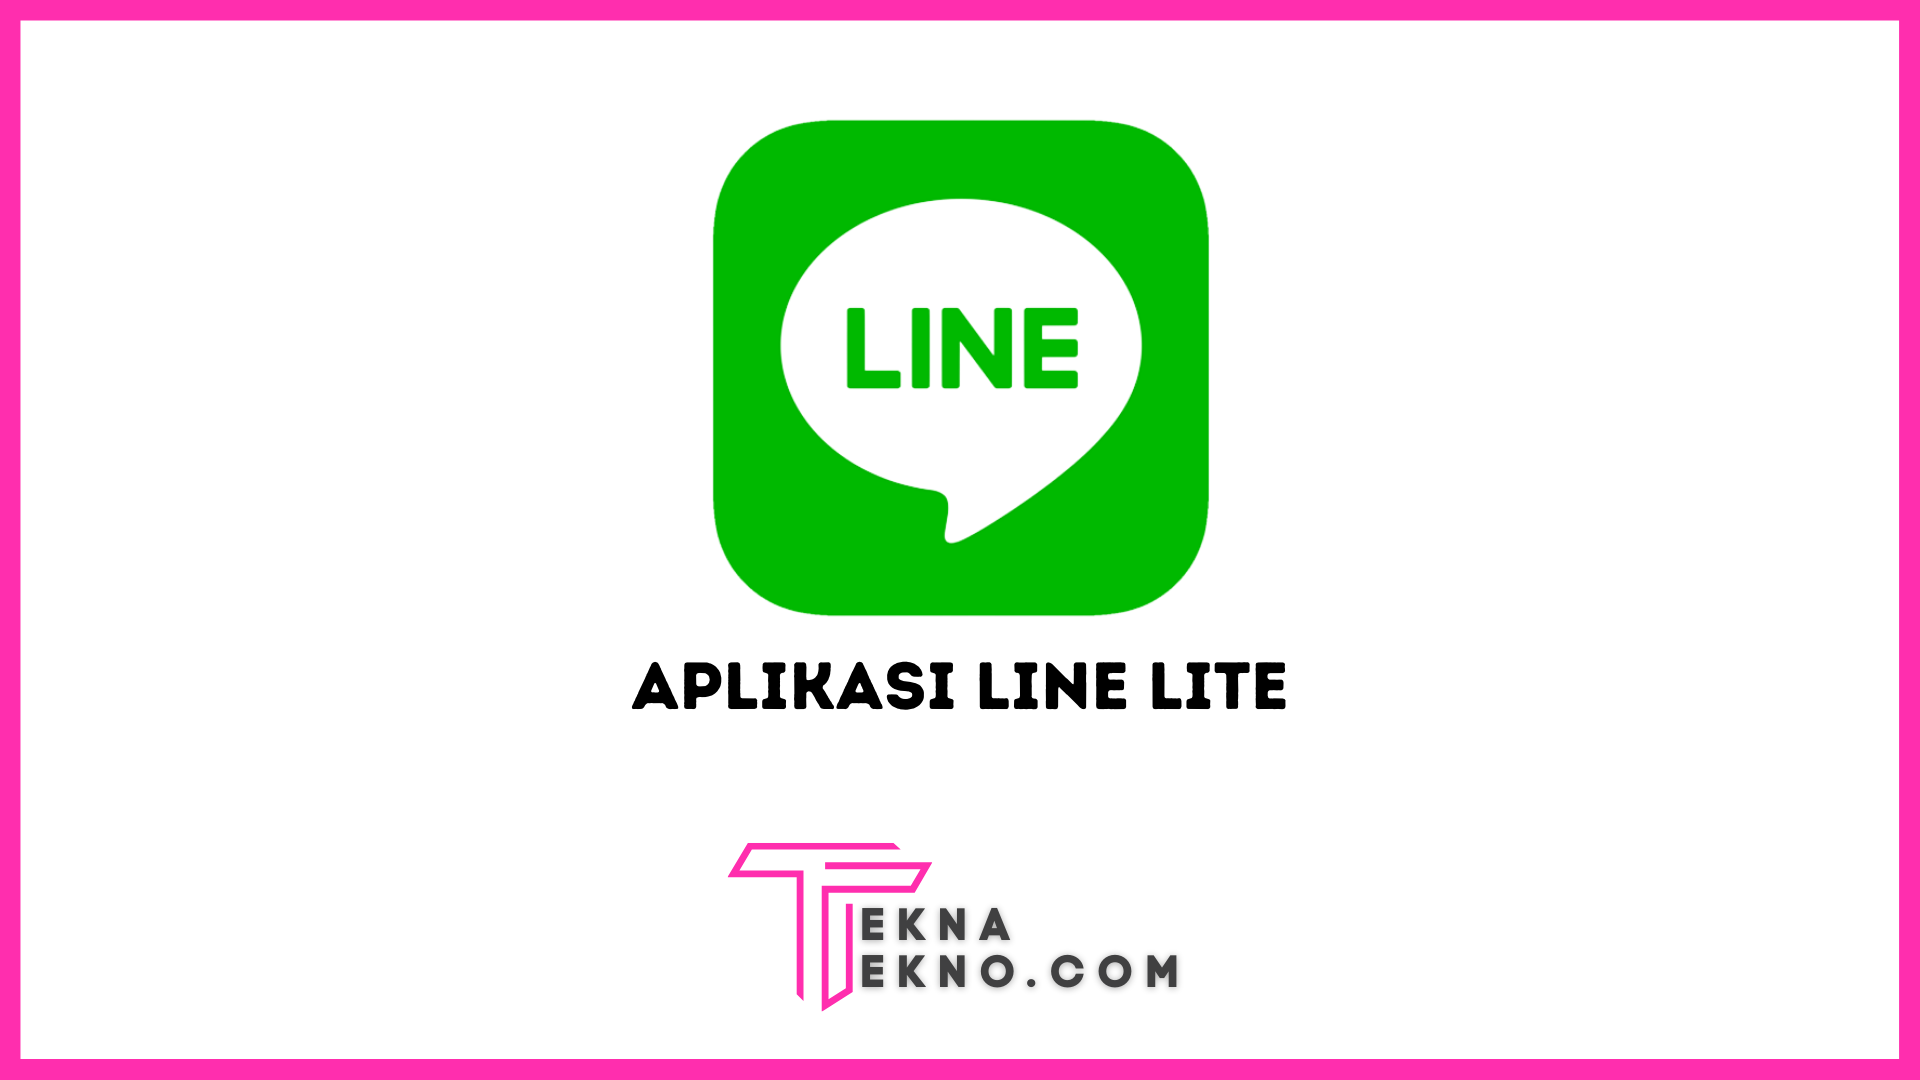 Aplikasi LINE Lite Kelebihan dan Kekurangan Serta Bedanya dengan LINE Reguler